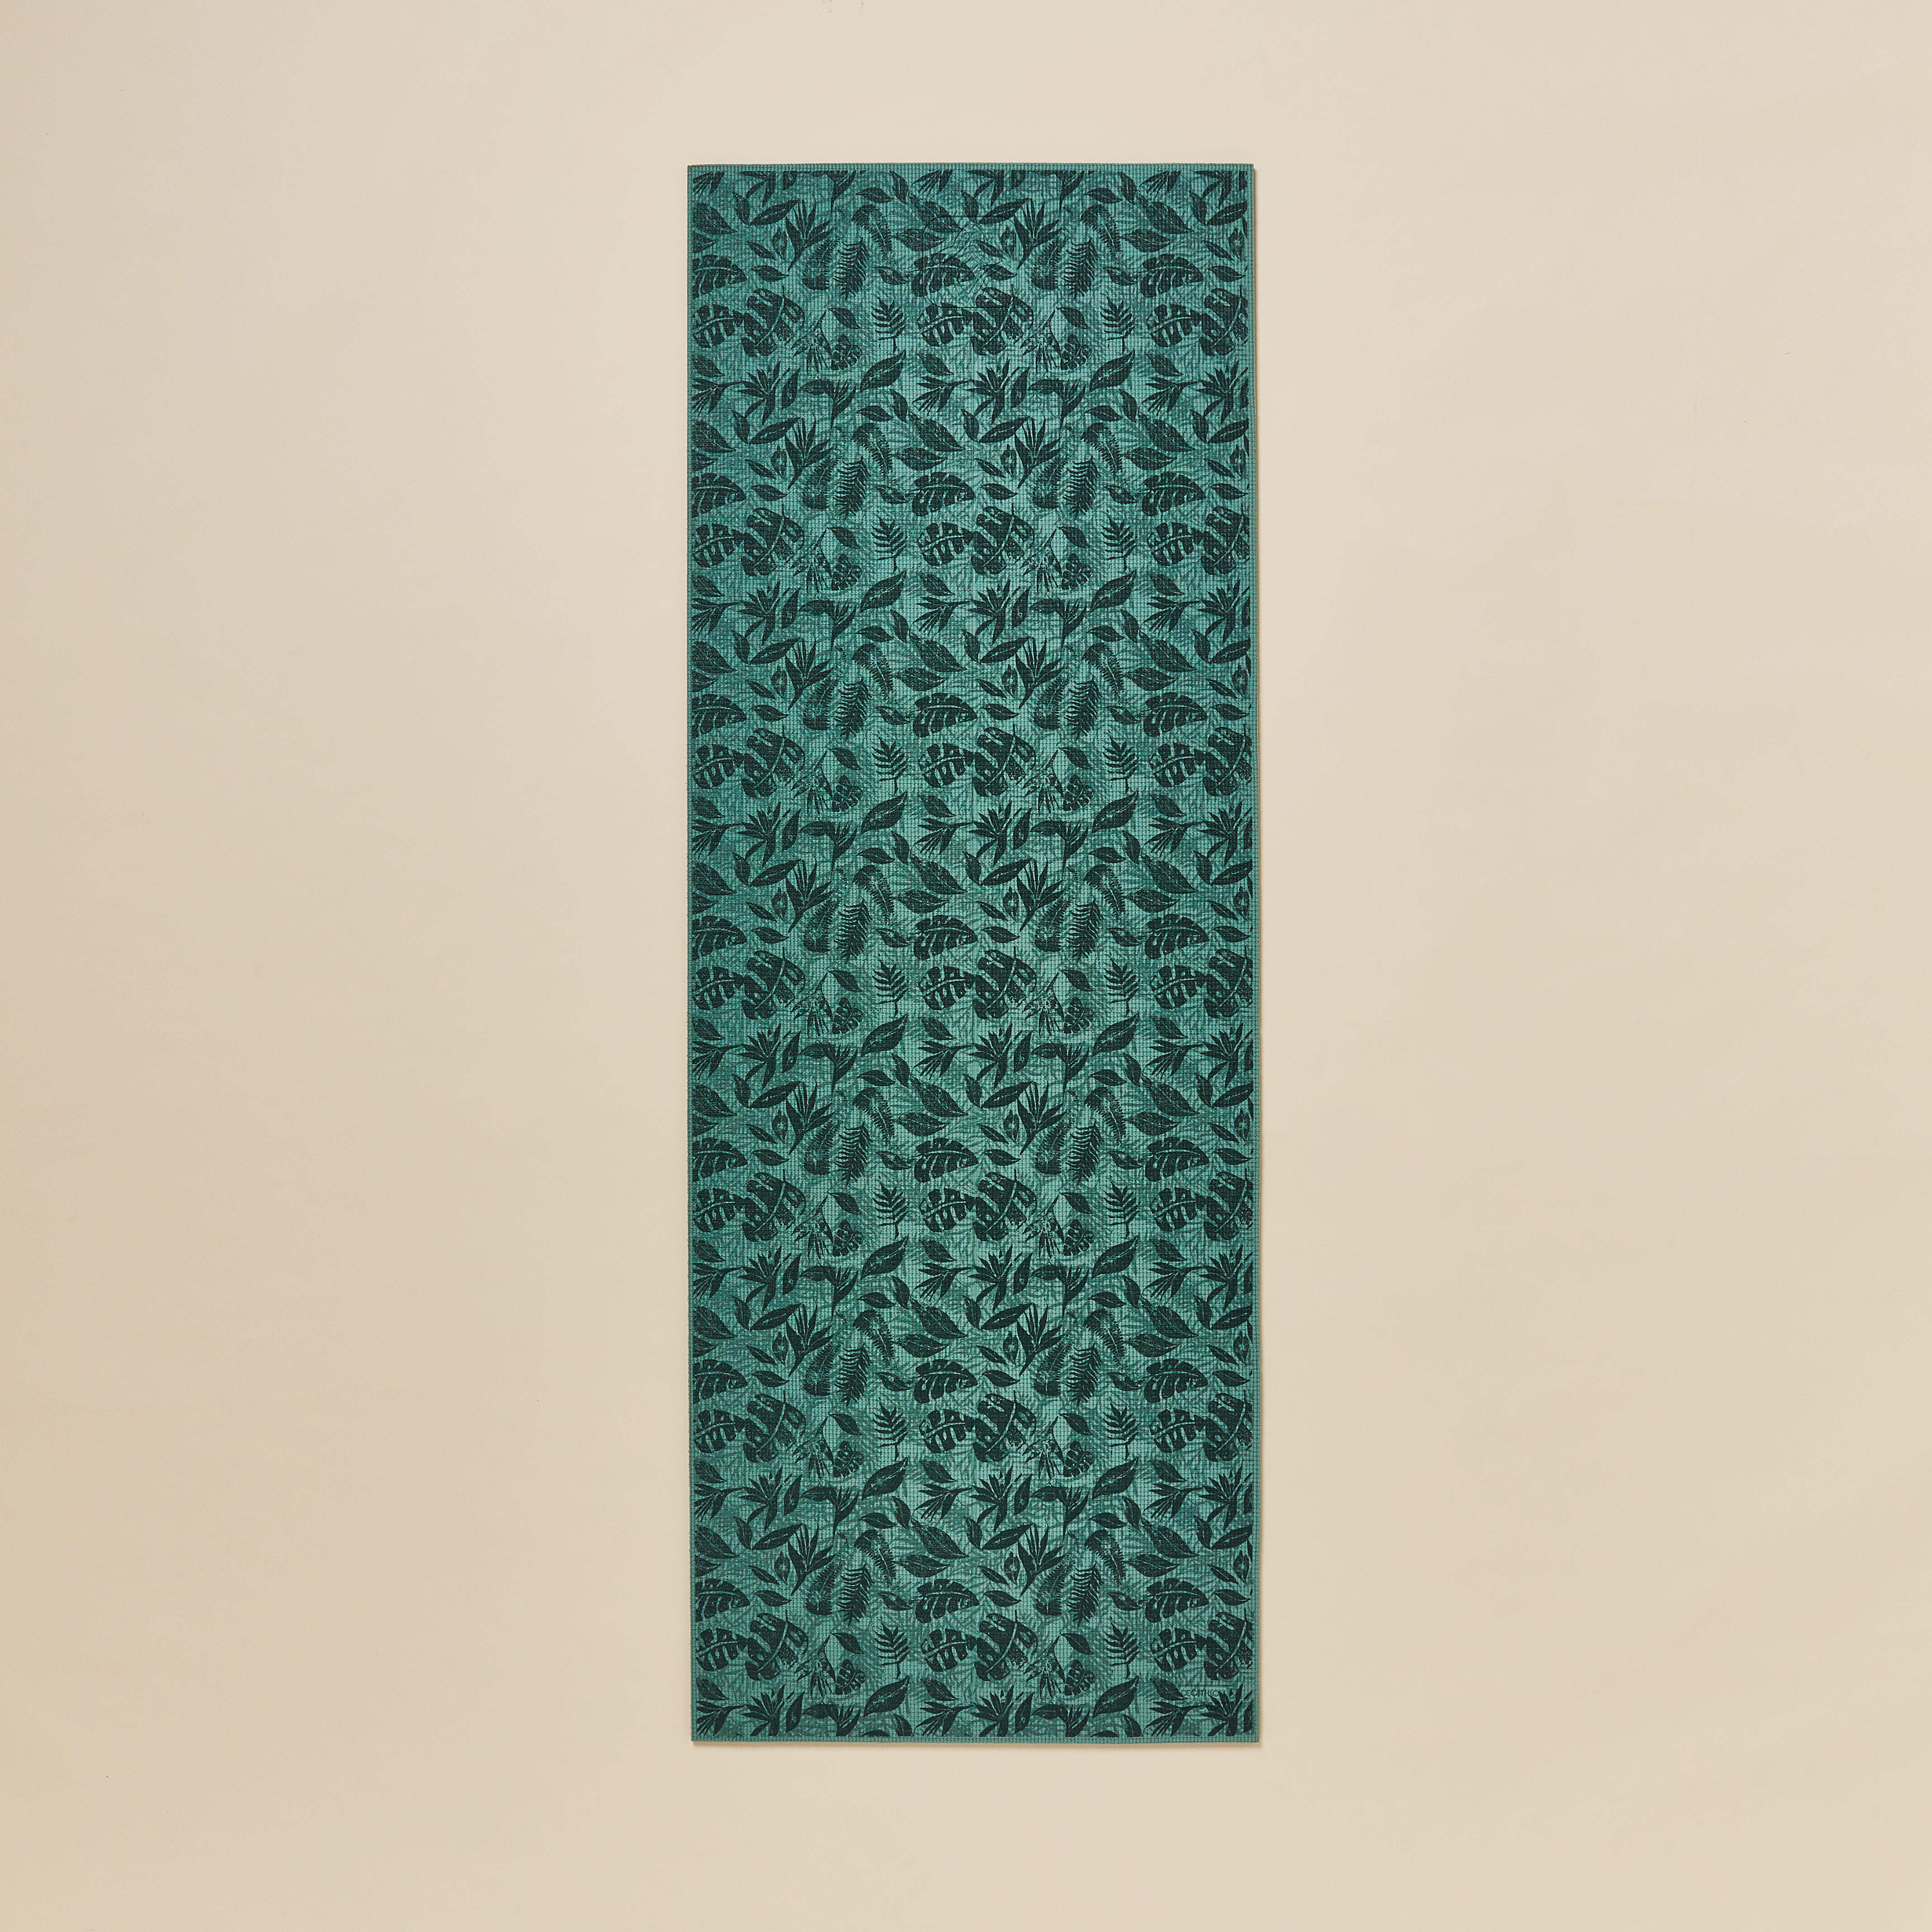 Gentle Yoga Comfort Mat 173 cm ⨯ 61 cm ⨯ 8 mm - Slate Blue